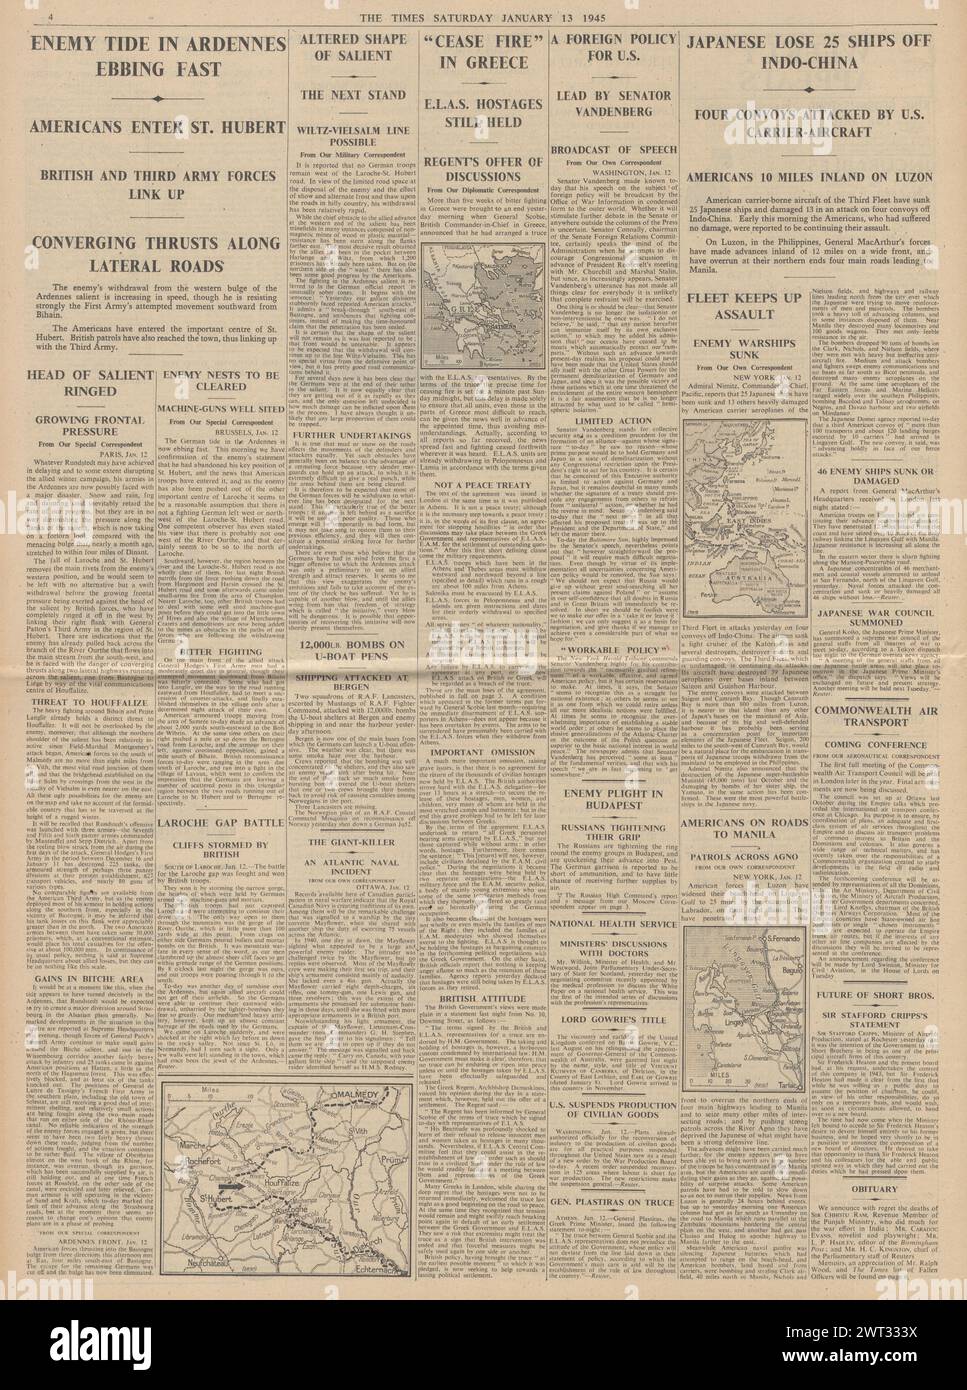 1945 The Times riportava la Battaglia delle Ardenne, i colloqui di pace in Grecia e le perdite della Marina giapponese al largo dell'Indo Cina Foto Stock